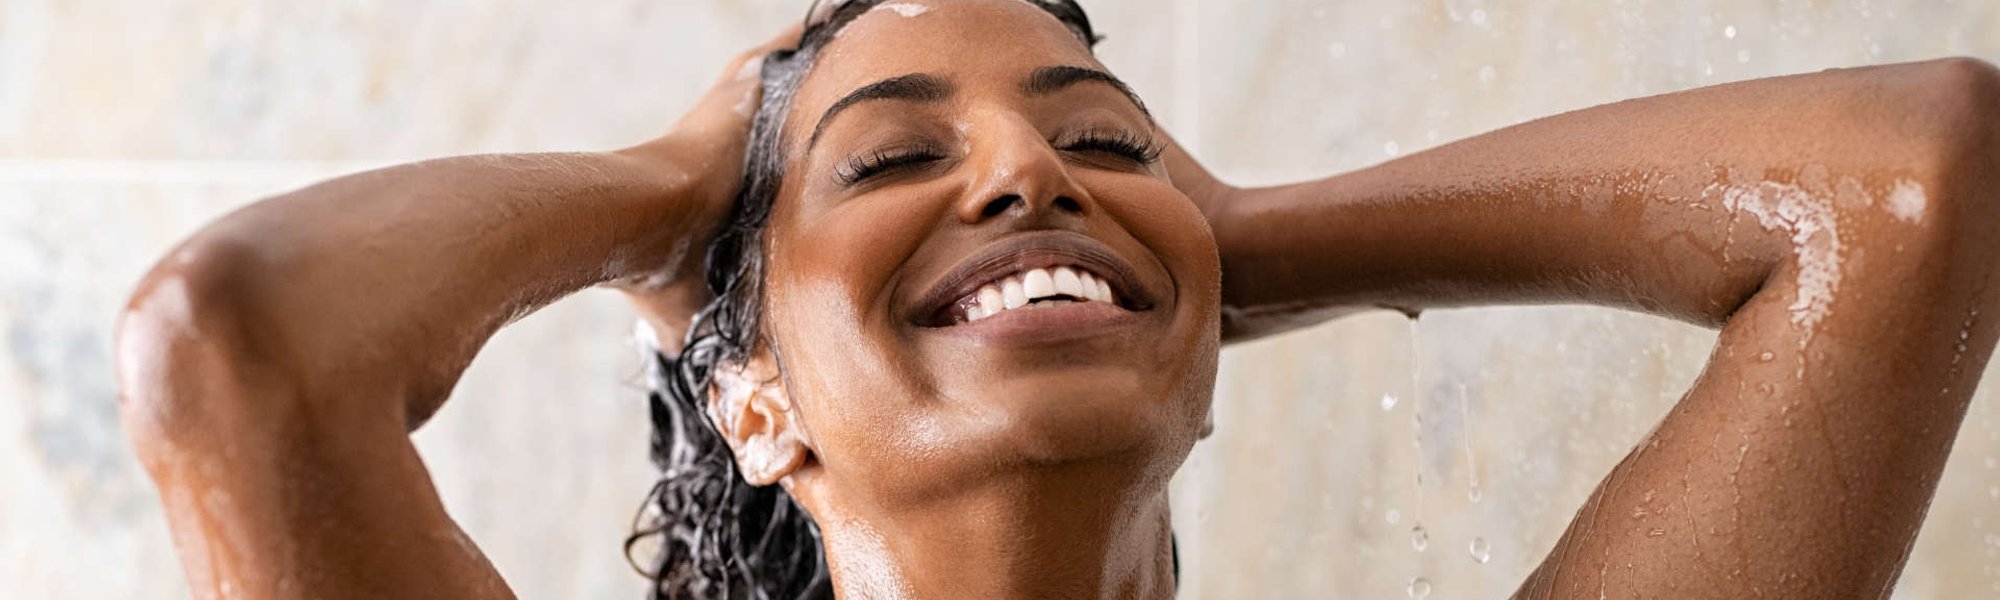 Lavar o cabelo cacheado todo dia faz mal? Descubra se usar shampoo  diariamente pode ressecar os cachos| L'Oréal Paris